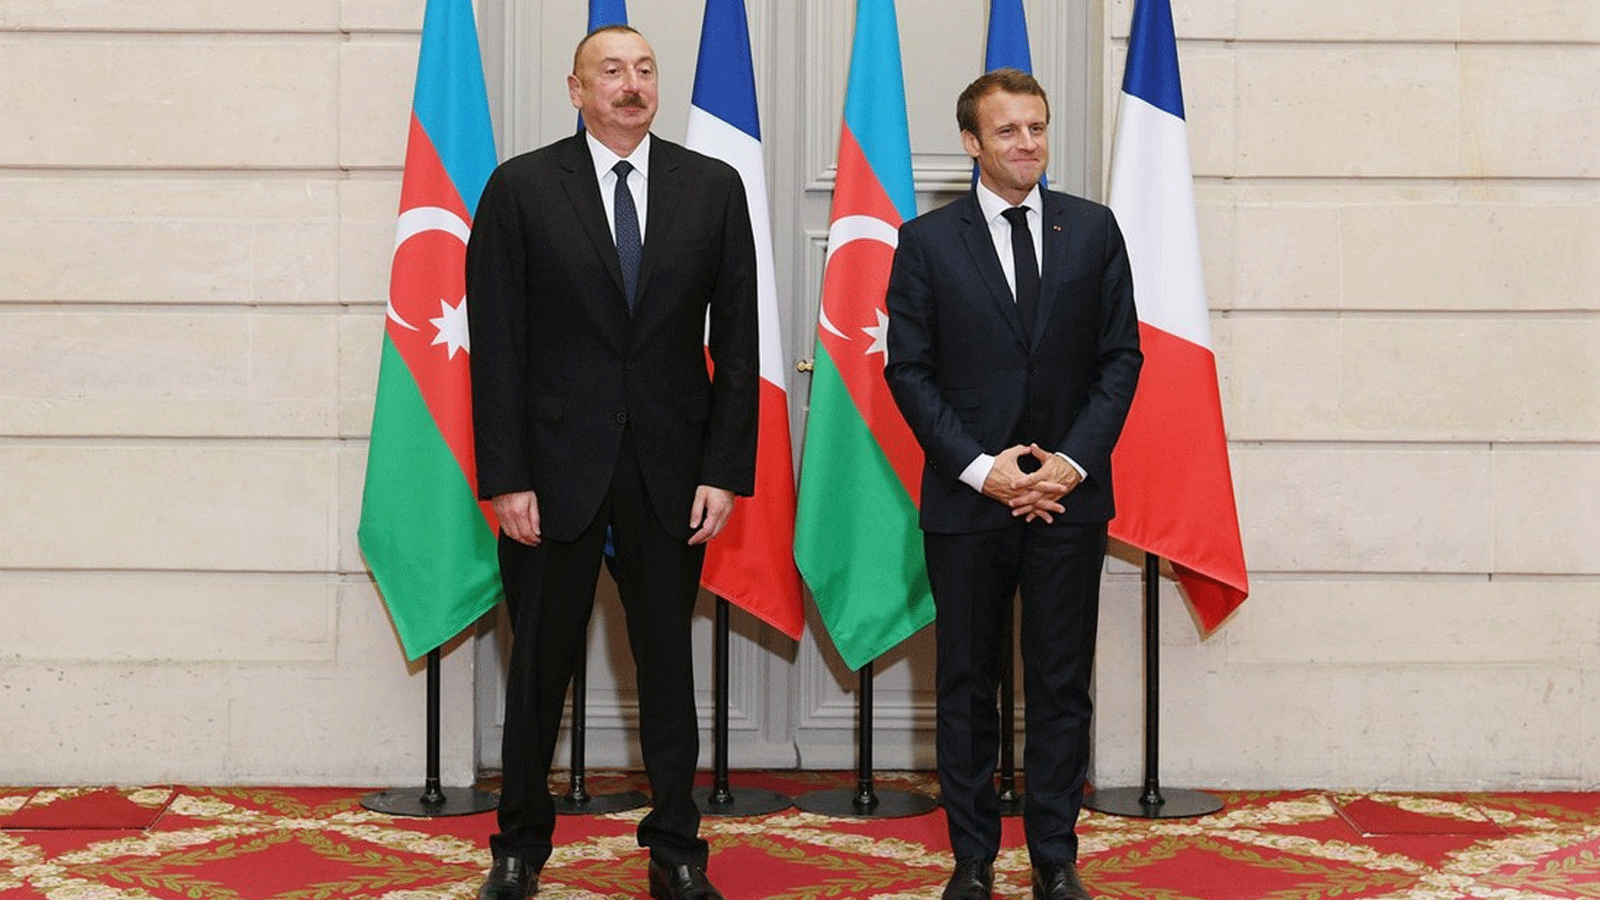 صورة أرشيفية للرئيسين الفرنسي إيمانويل ماكرون والأذربيجاني إلهام علييف(الرئاسة الأذربيجانية)